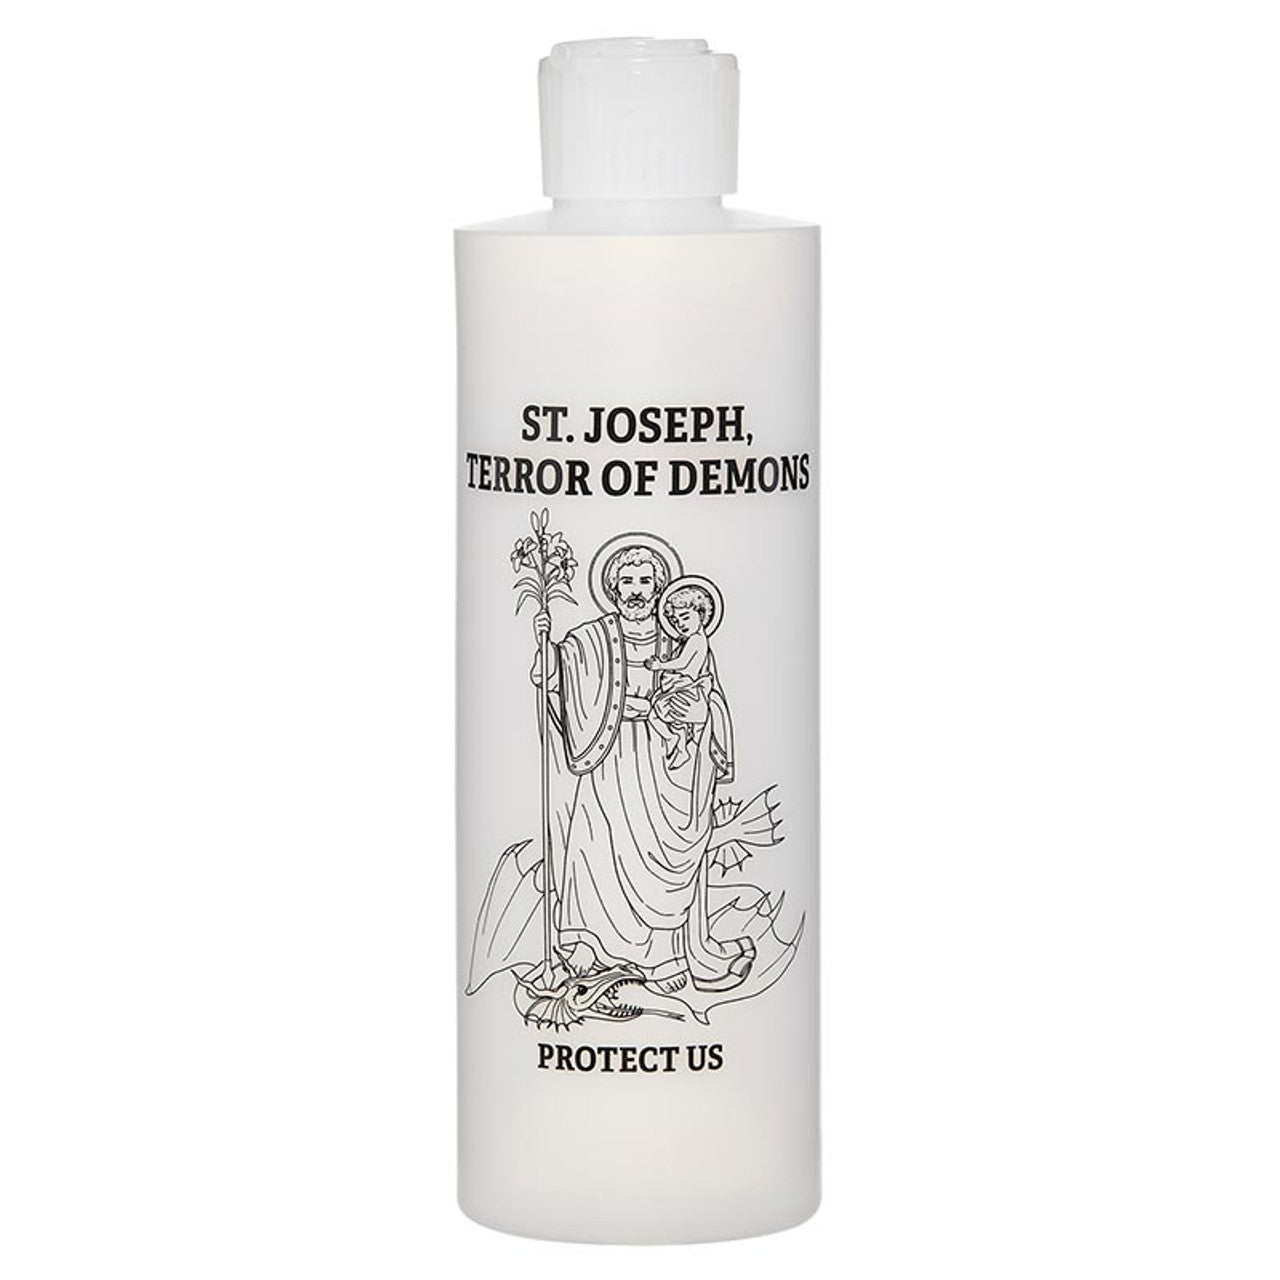 St. Joseph Terror of Demons Holy Water Bottle